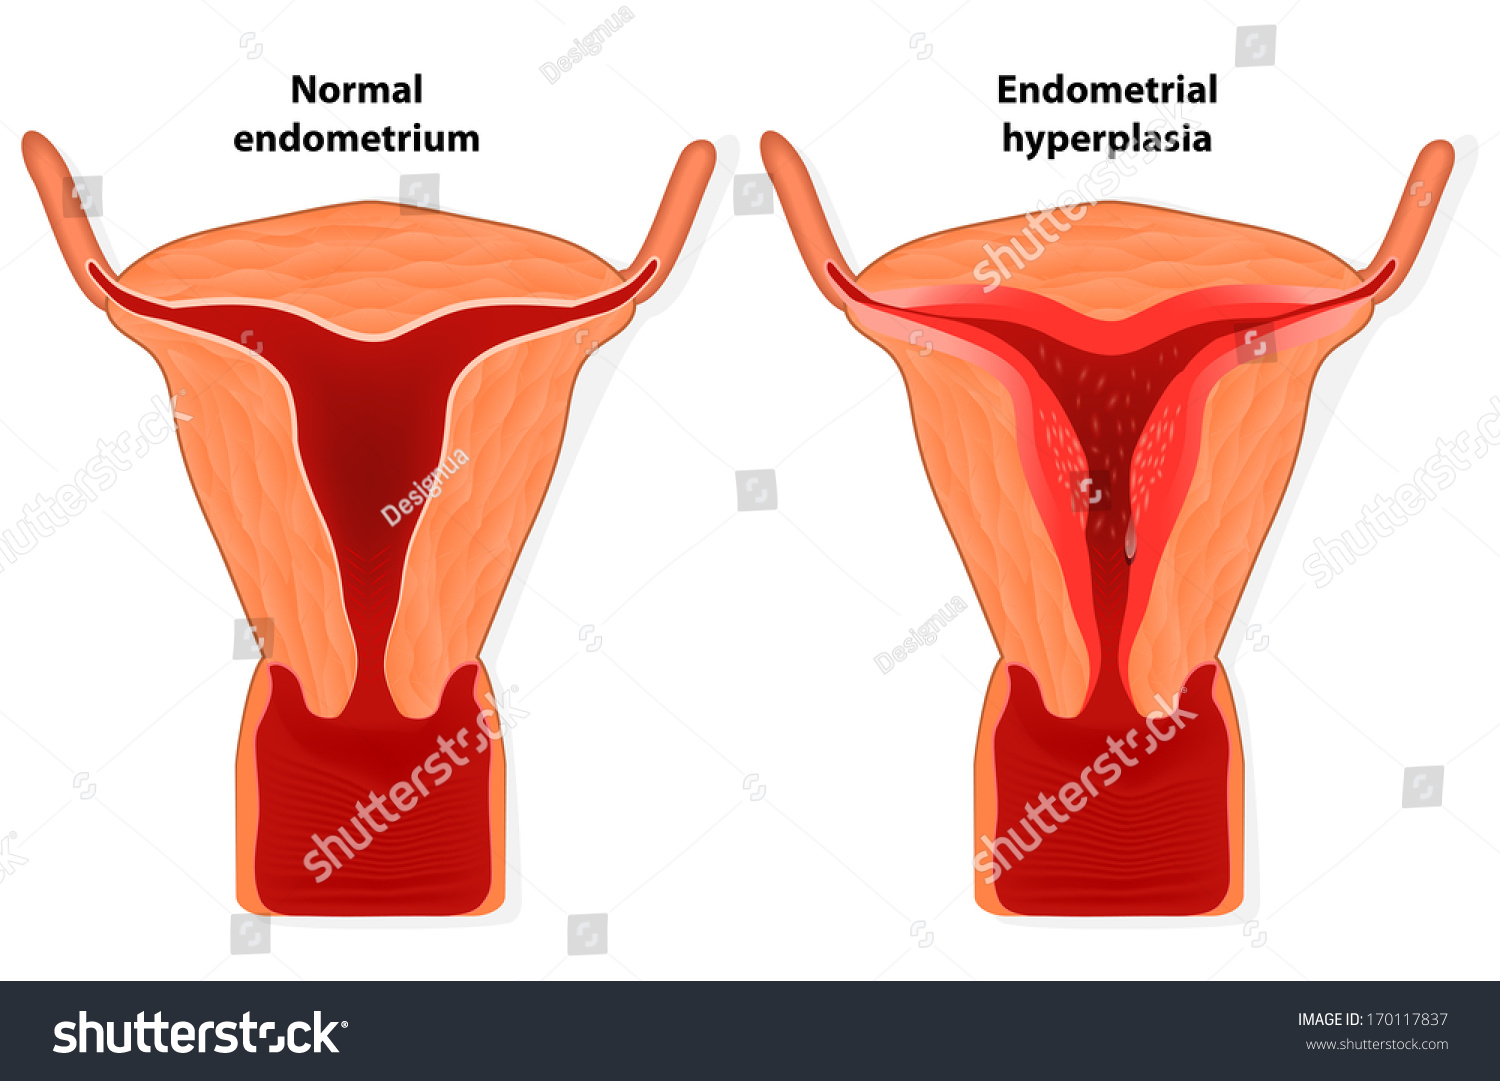 tilted uterus diagram